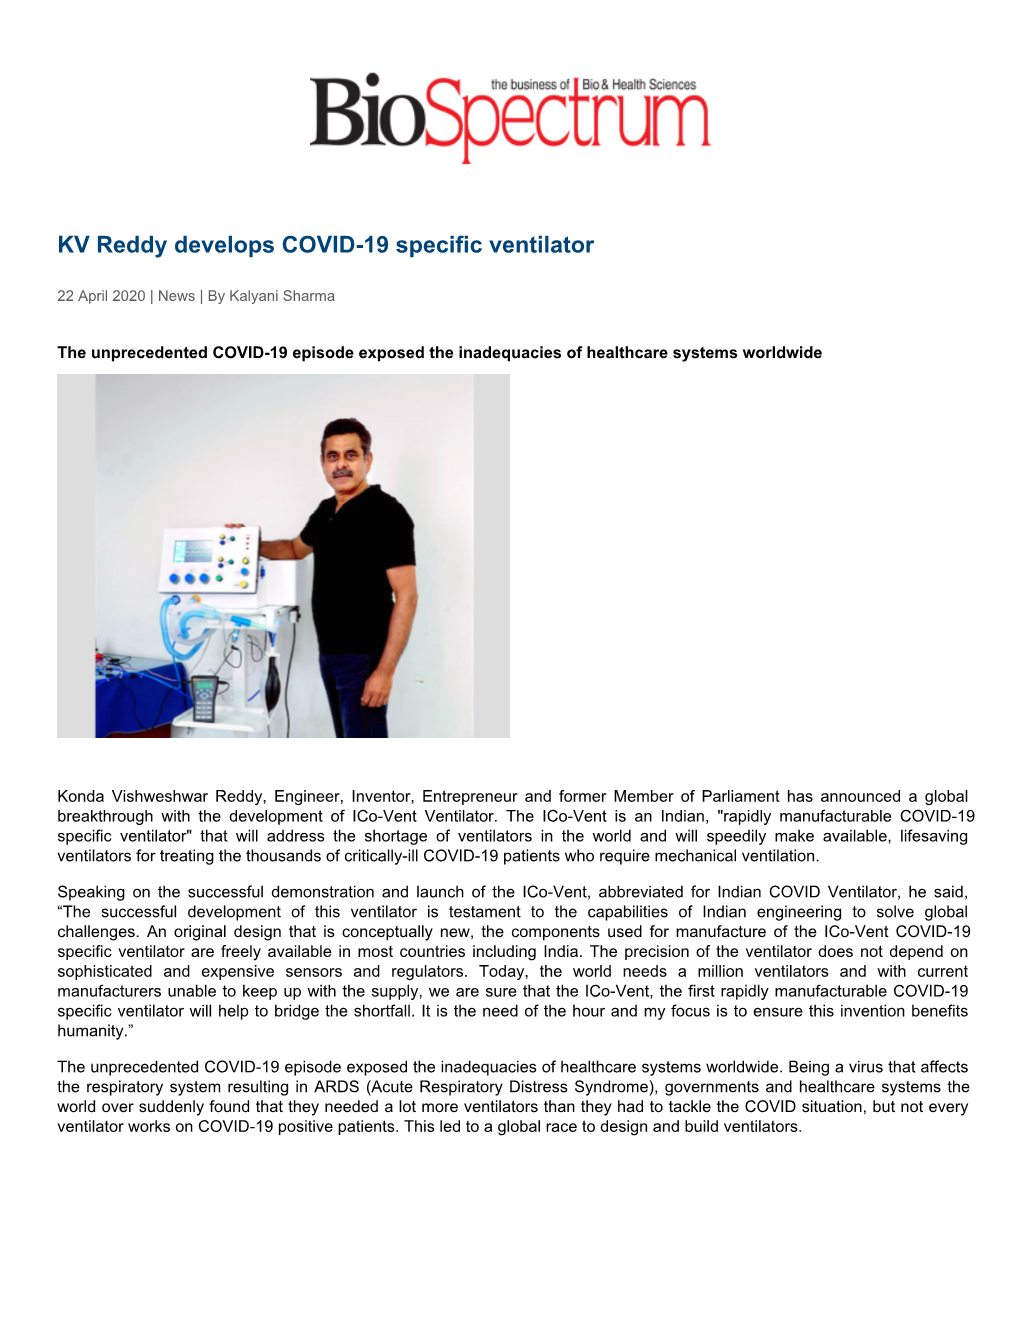 KV Reddy Develops COVID-19 Specific Ventilator